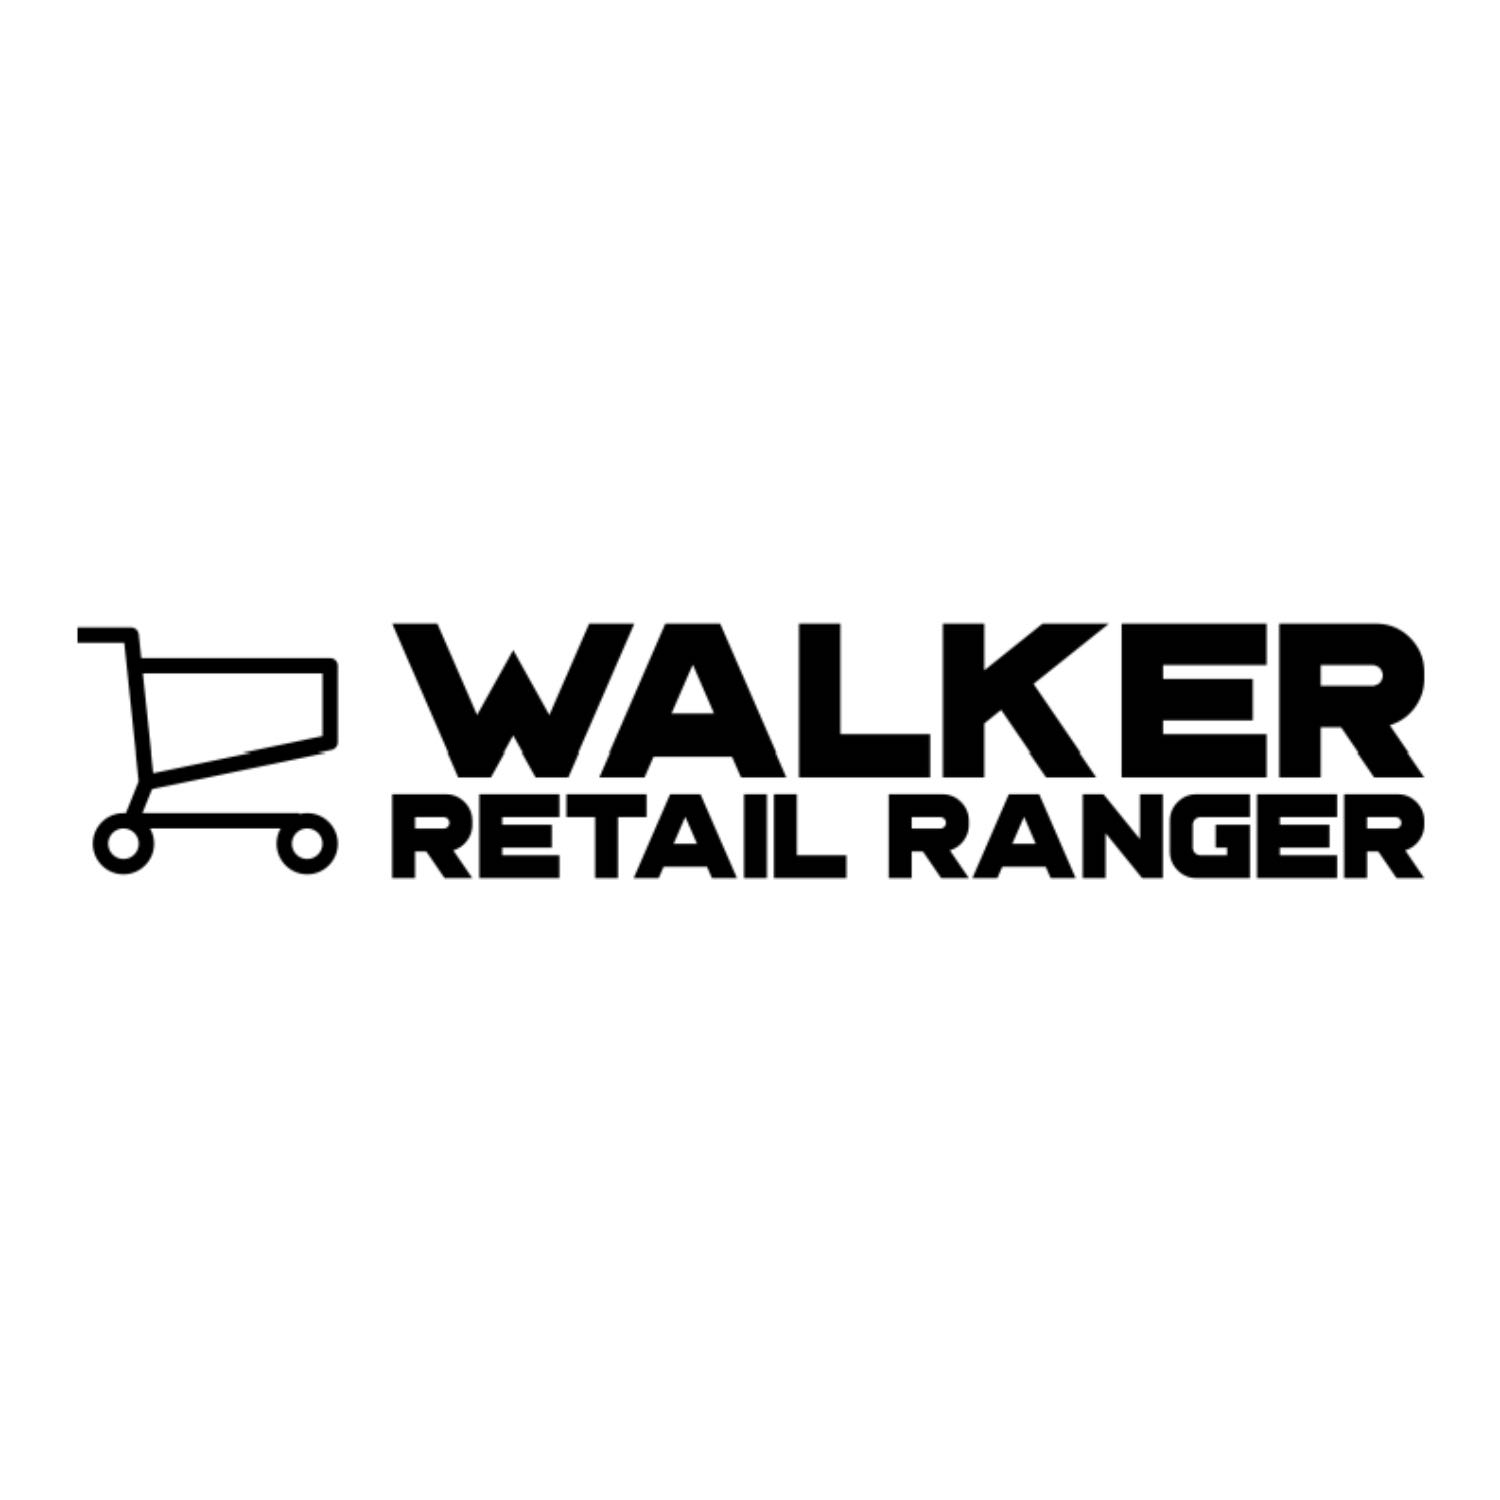 Retail Ranger Podcast Episode 1 (a new beginning)